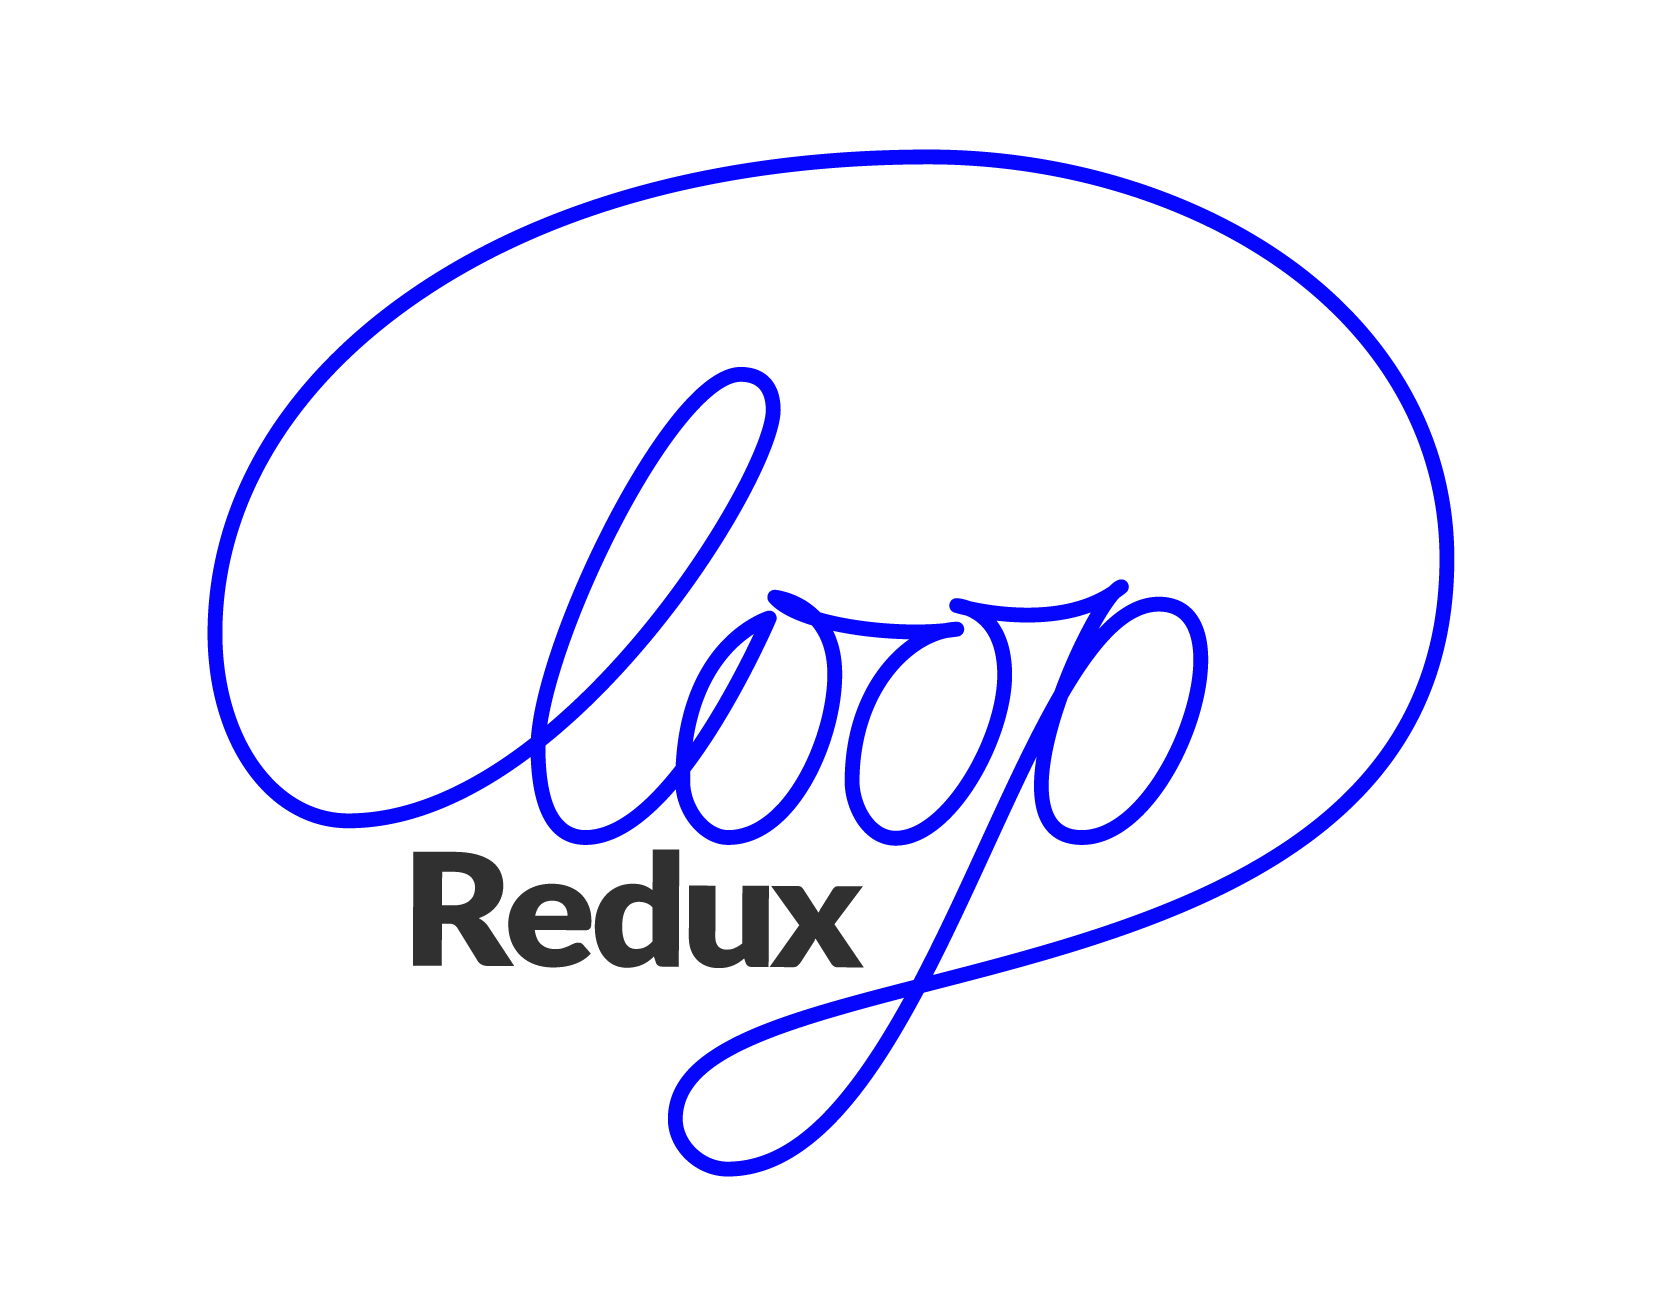 Loop Logo - redux-loop/README.md at master · redux-loop/redux-loop · GitHub